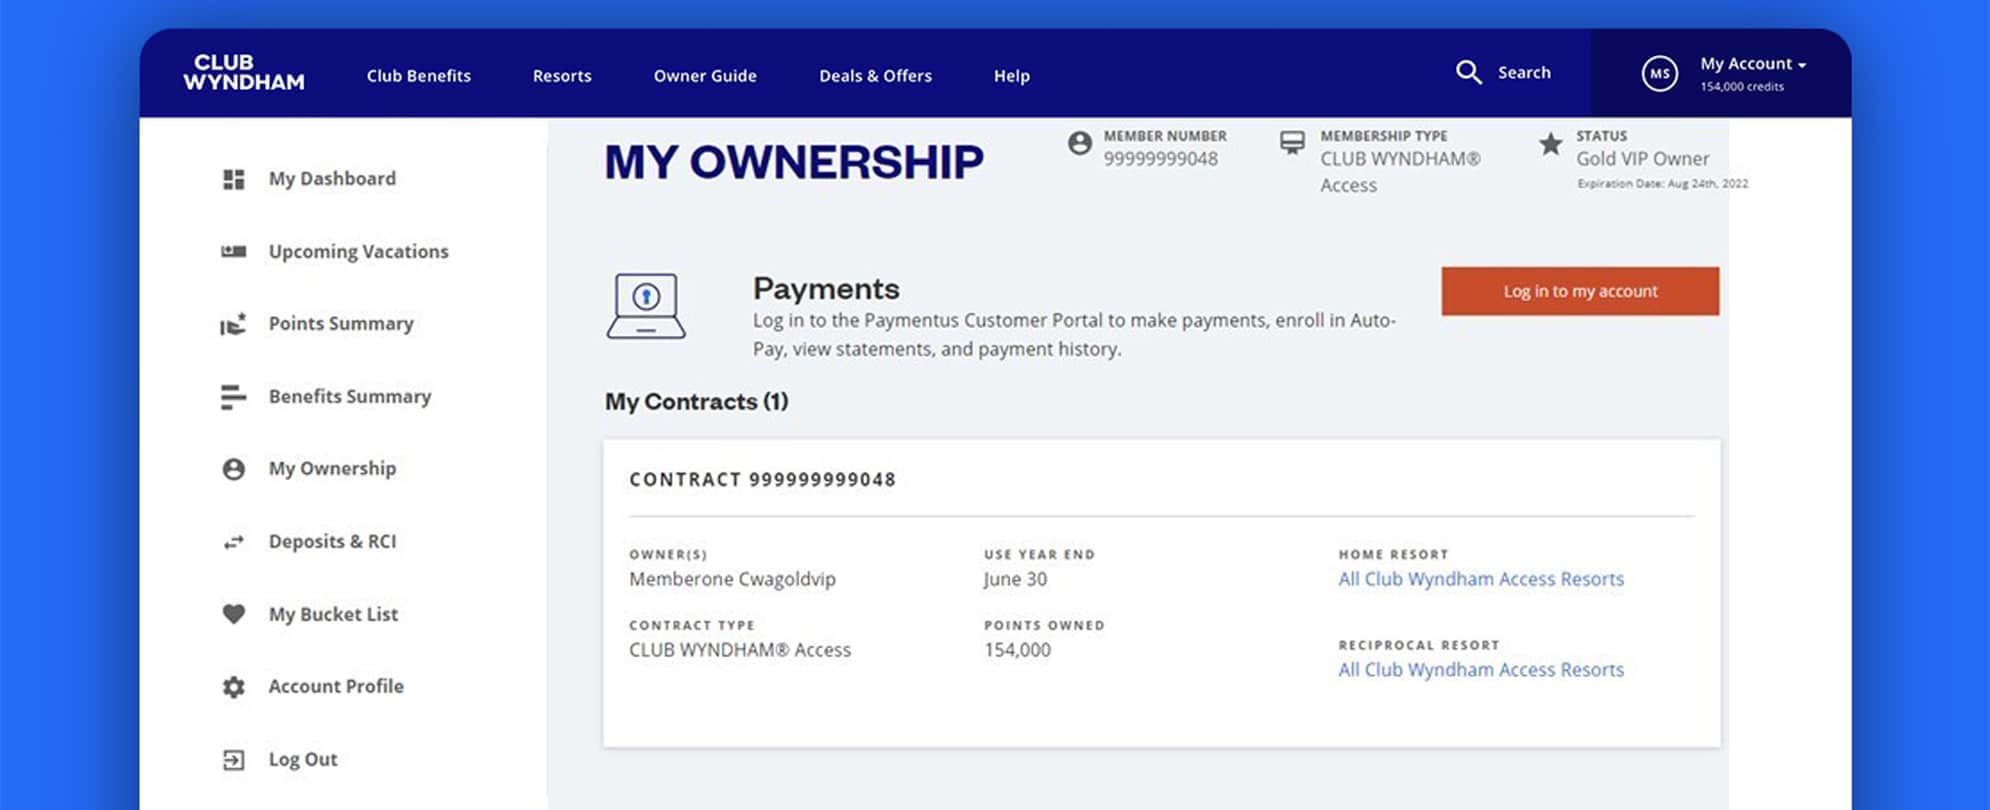 A screenshot of the My Ownership dashboard on Club Wyndham.com.